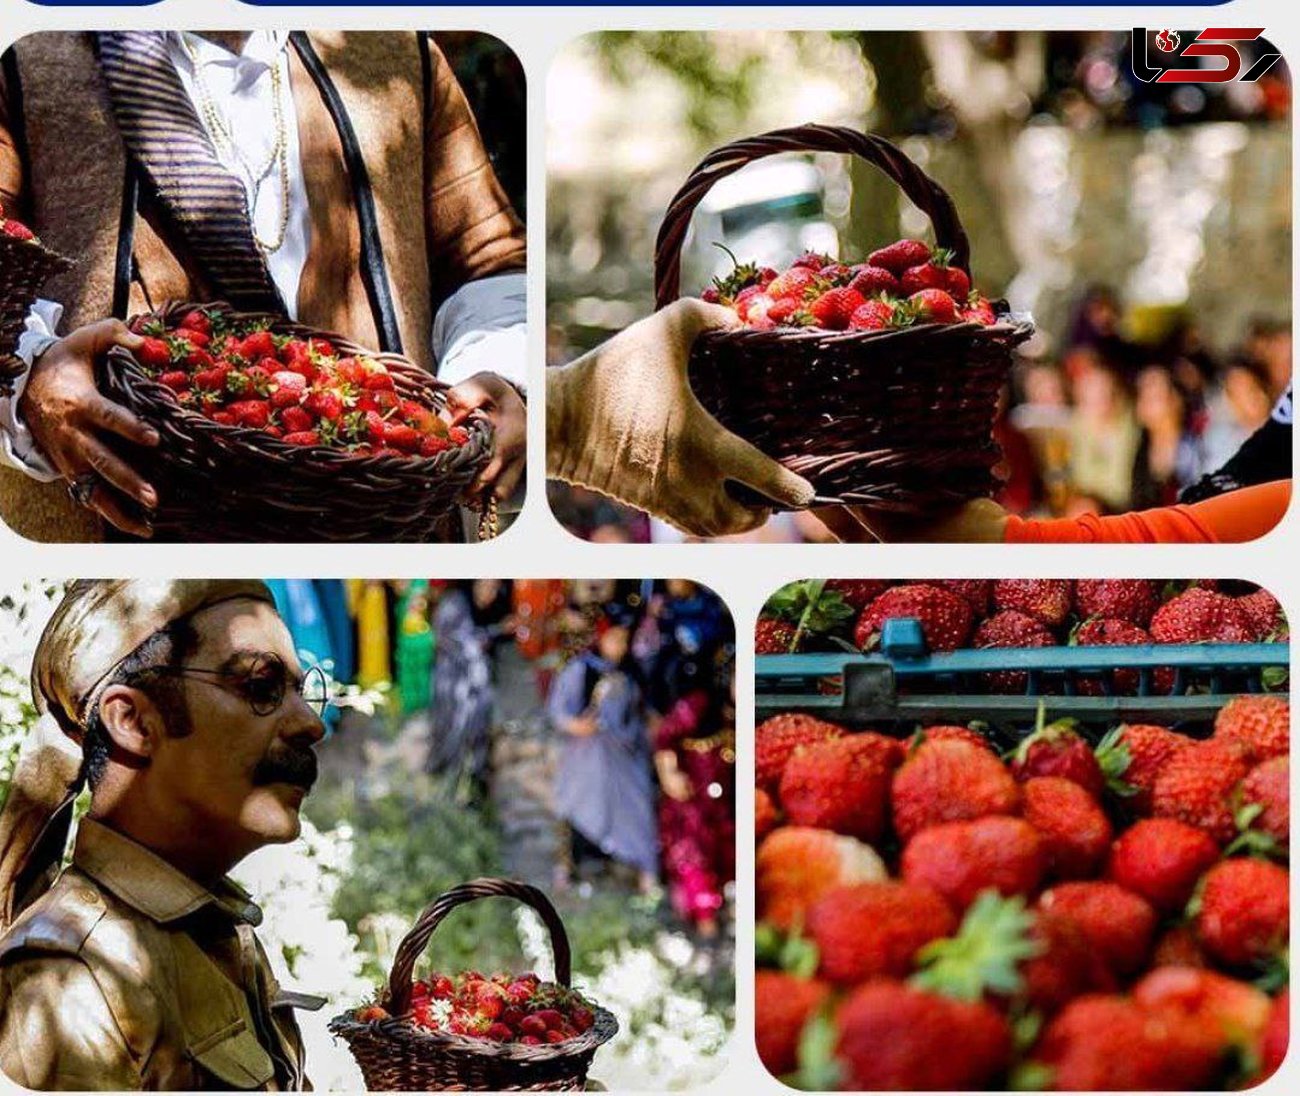  کردستان رتبه اول تولید توت فرنگی کشور را دارد